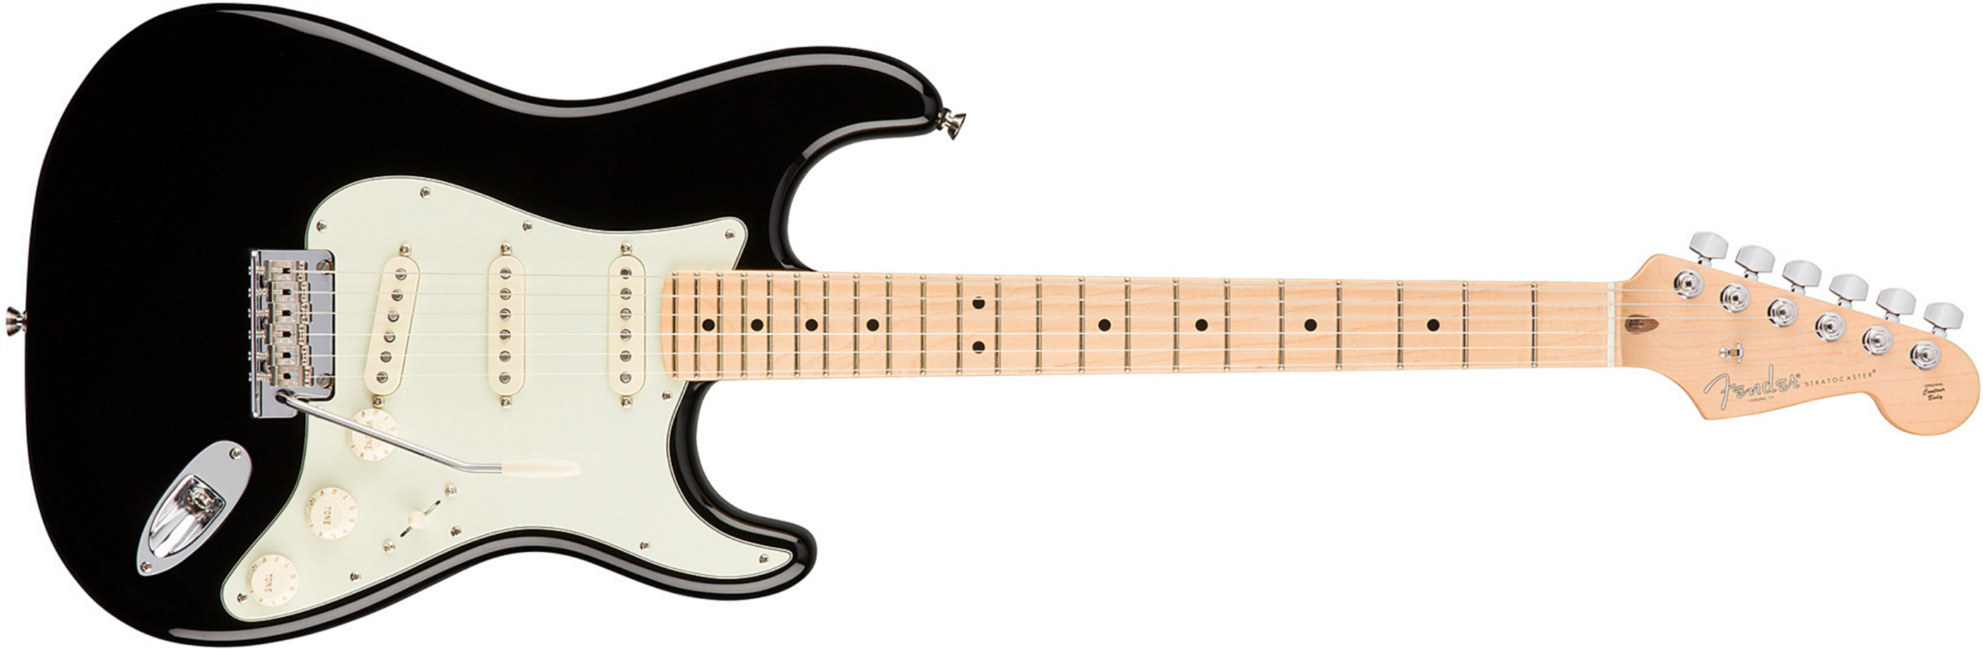 Fender Strat American Professional 2017 3s Usa Mn - Black - Elektrische gitaar in Str-vorm - Main picture